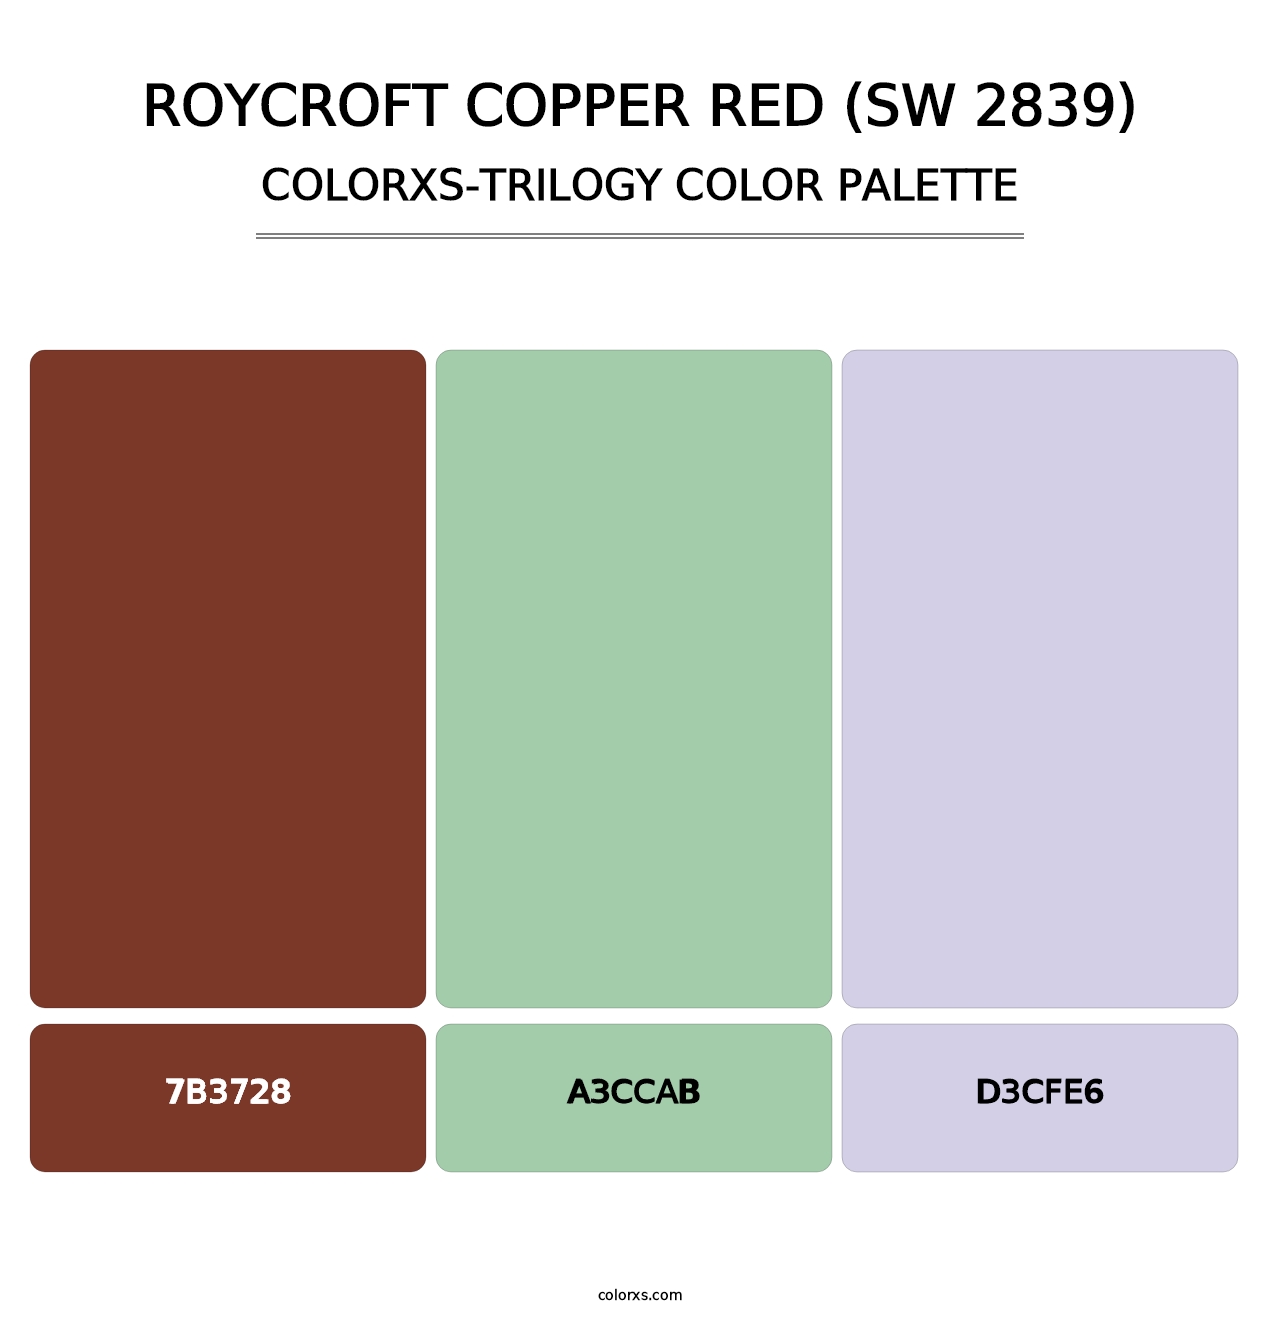 Roycroft Copper Red (SW 2839) - Colorxs Trilogy Palette